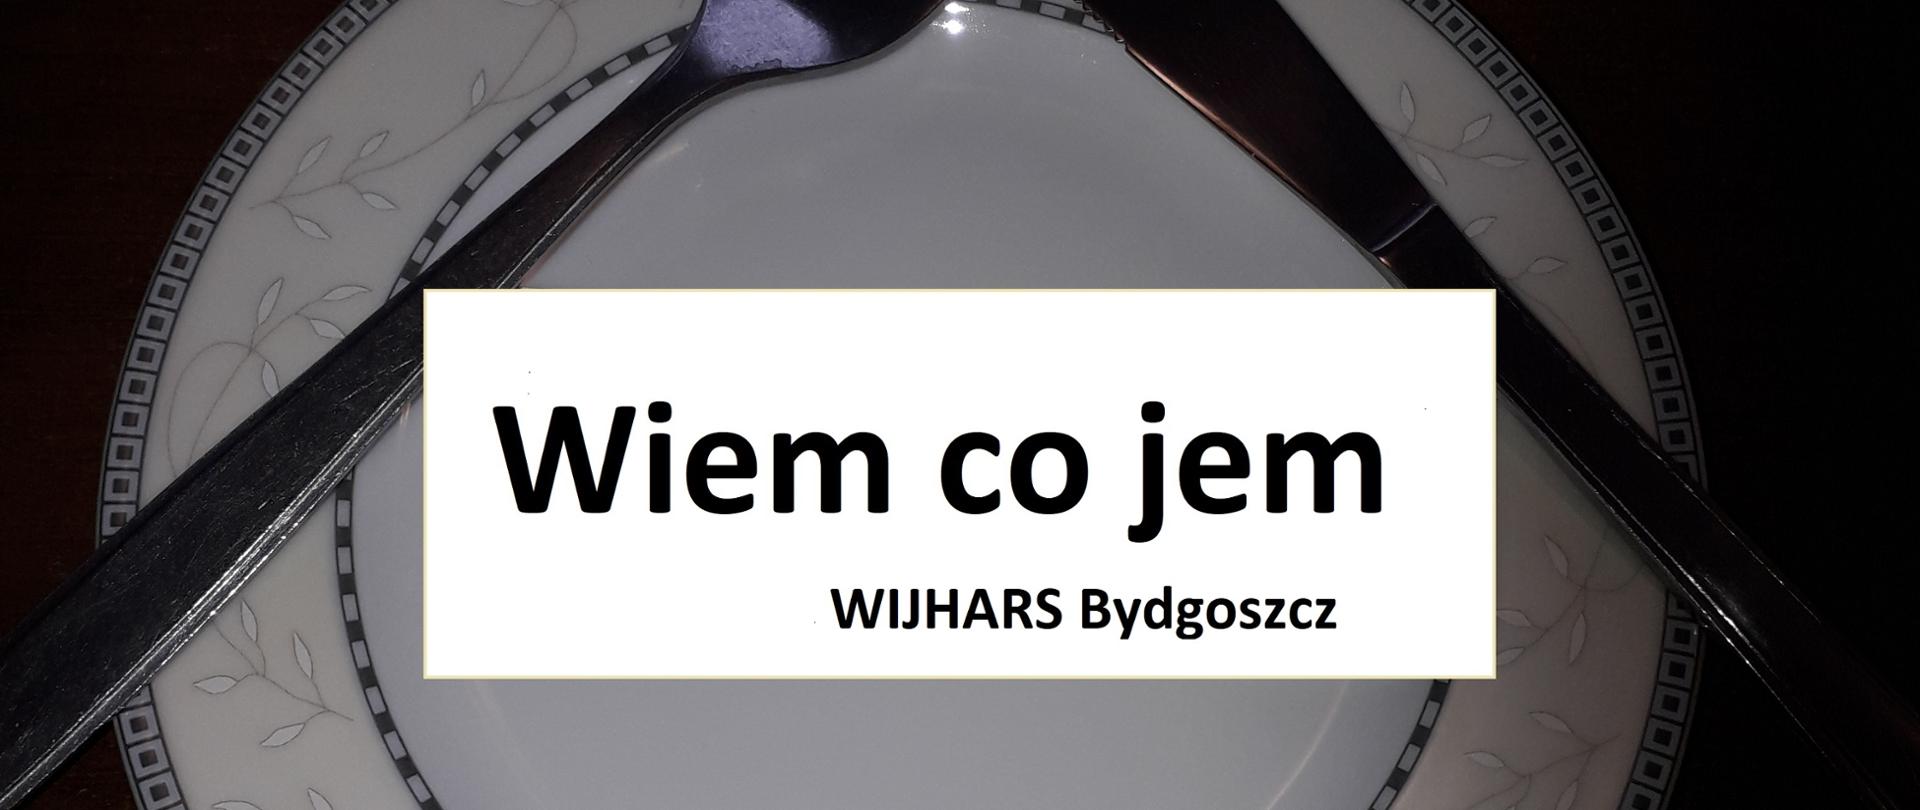 Zdjęcie przedstawia talerz z widelcem i nożem oraz napisem "wiem co jem orz WIJHARS Bydgoszcz"